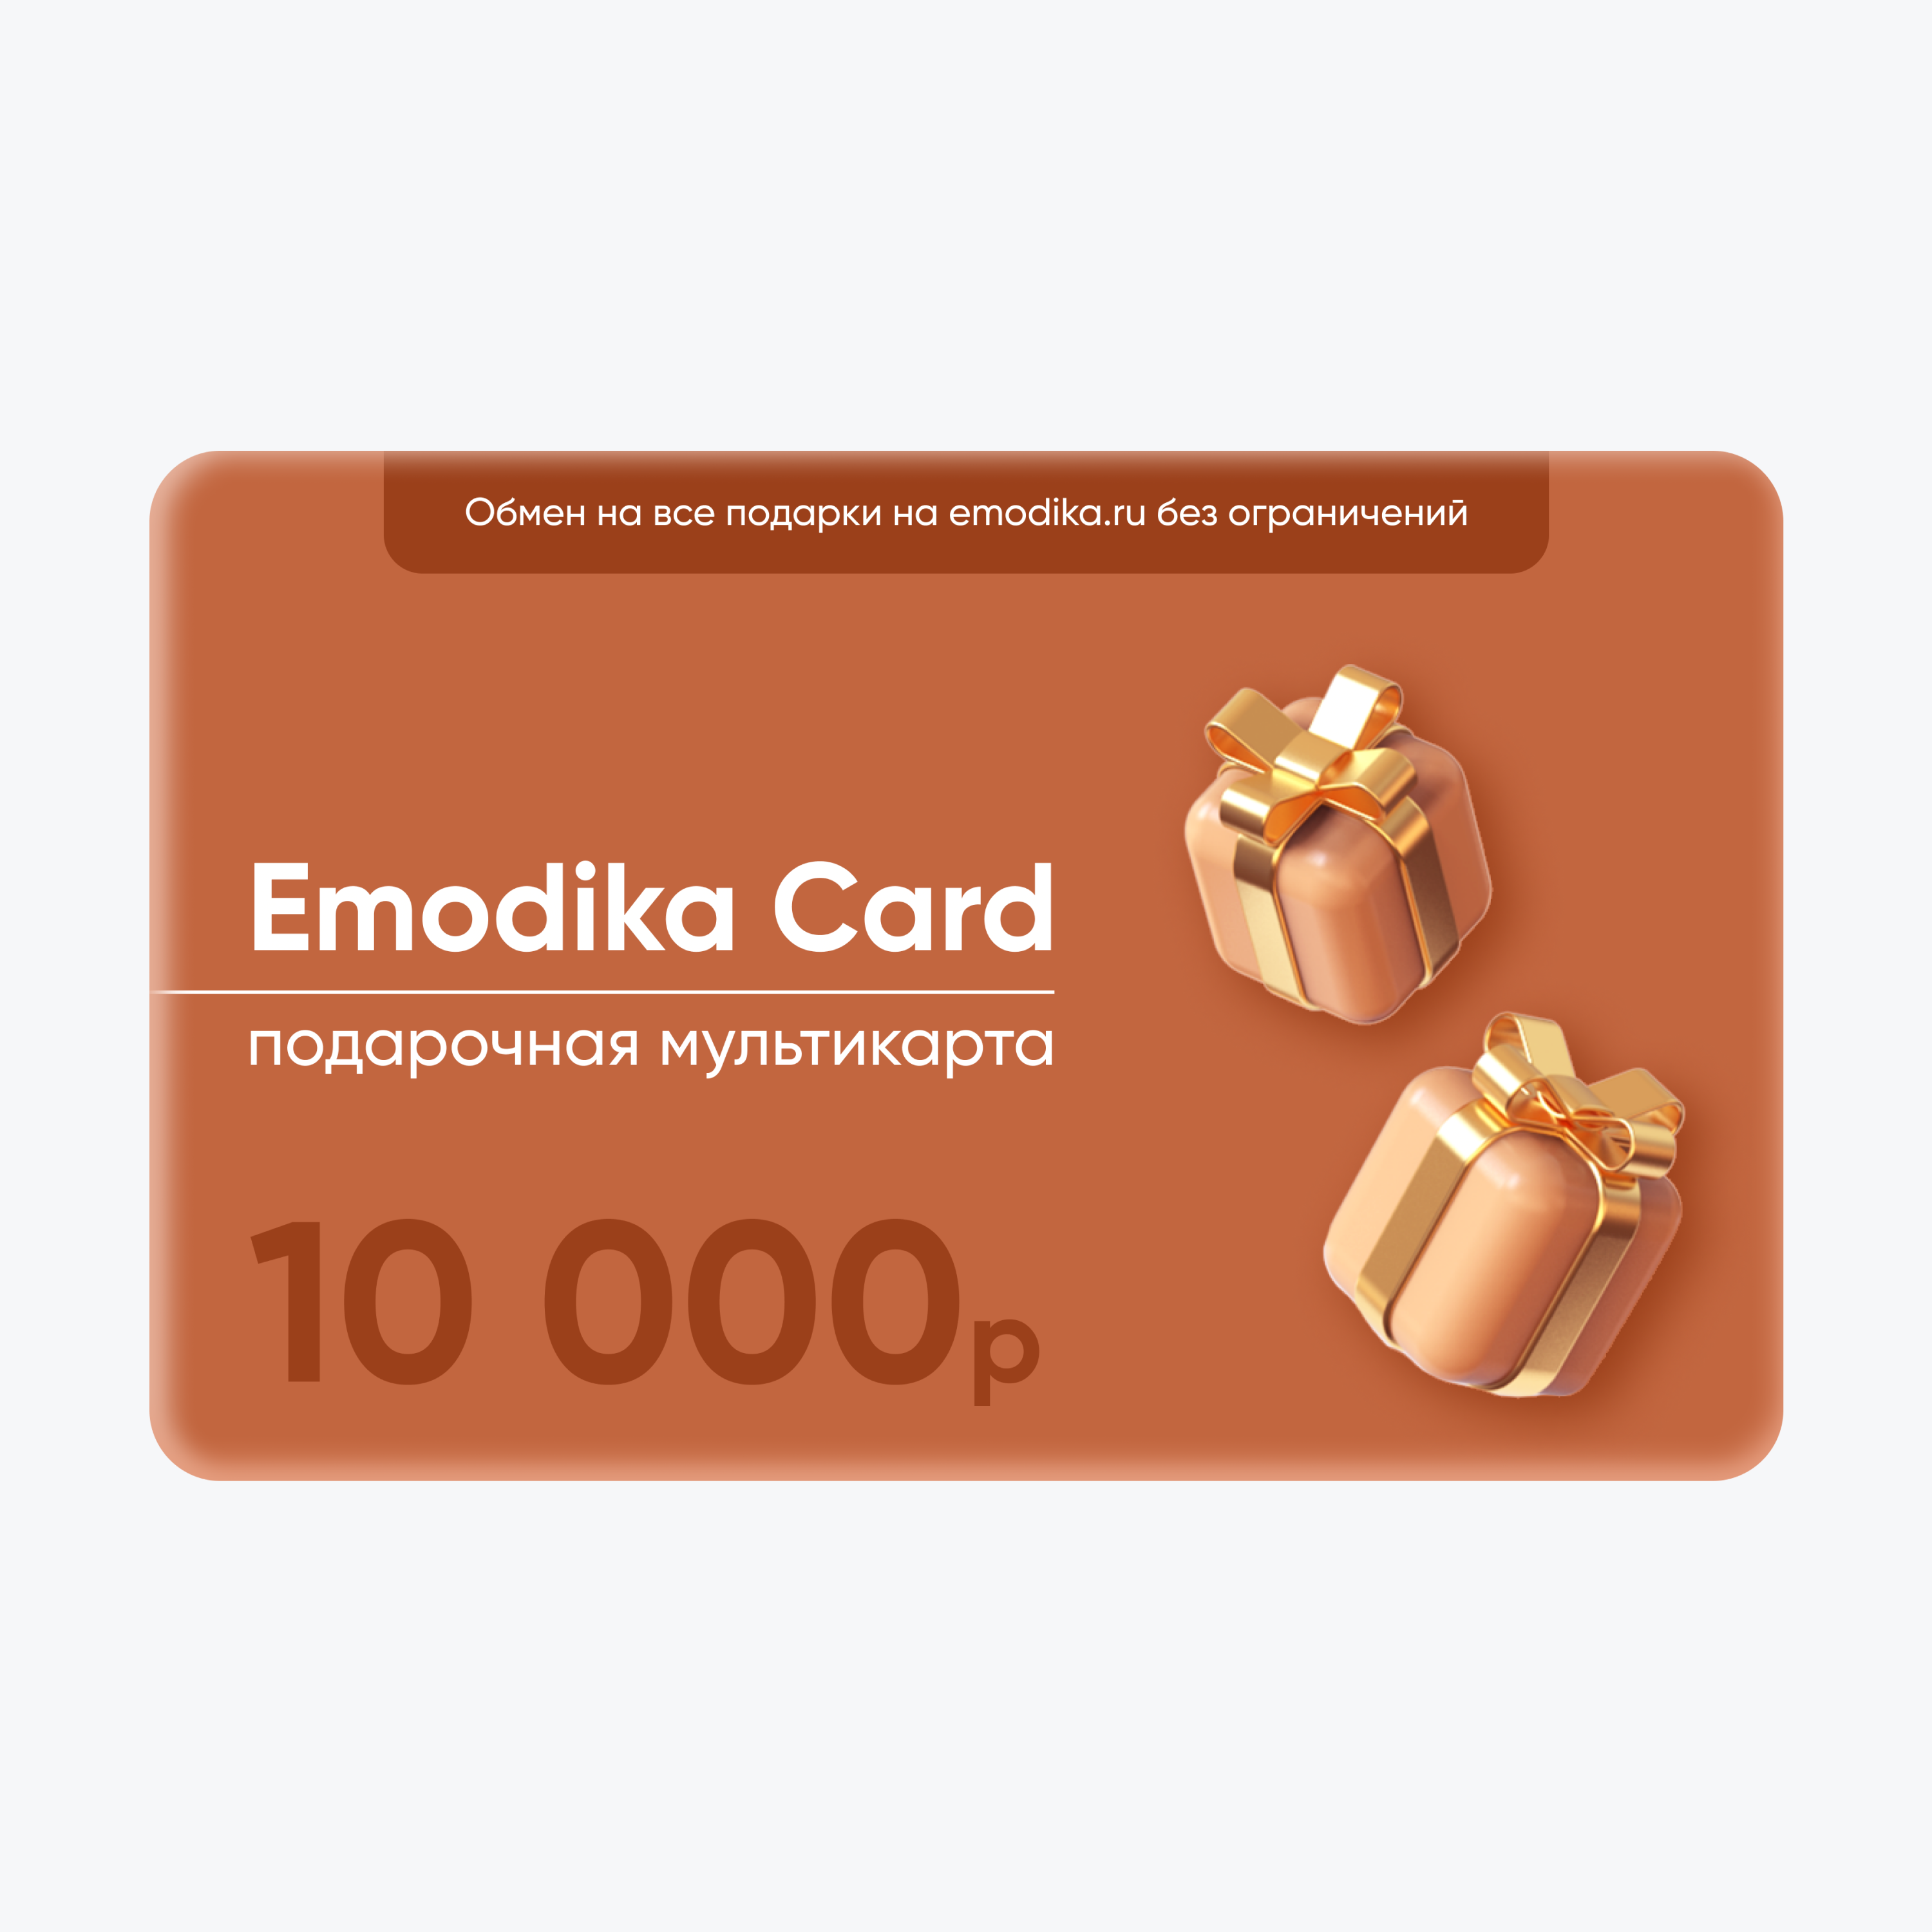 Emodika Card: 10.000 рублей